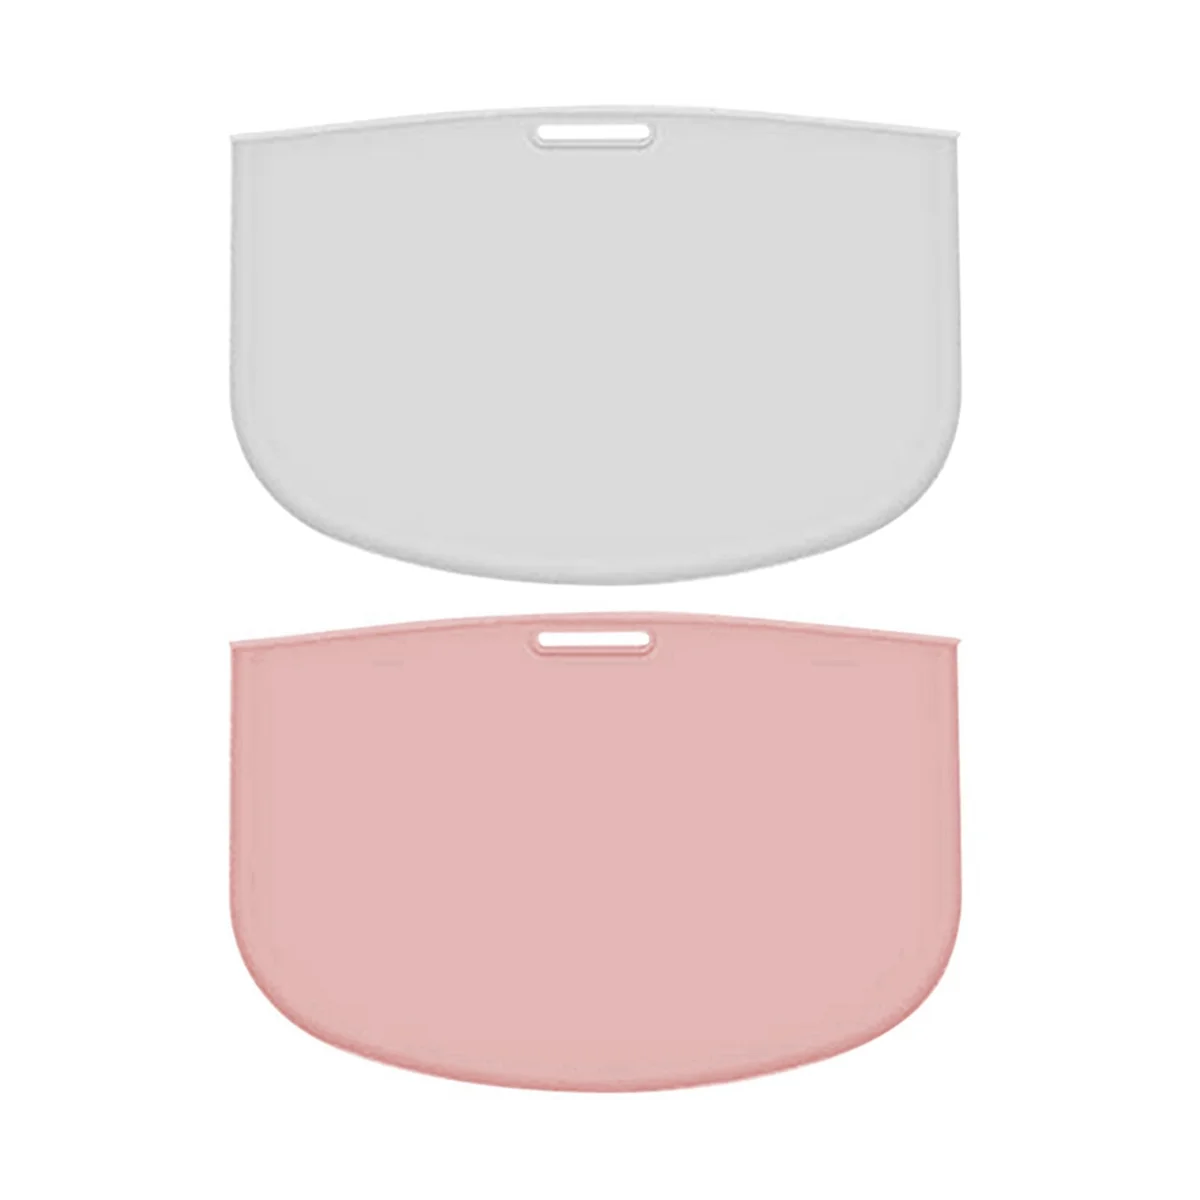 

Вкладыши для медленной плиты, многоразовый разделитель, безопасные силиконовые пакеты для приготовления пищи, подходят для овальных или круглых кастрюль 7-8 месяцев, 2 шт.